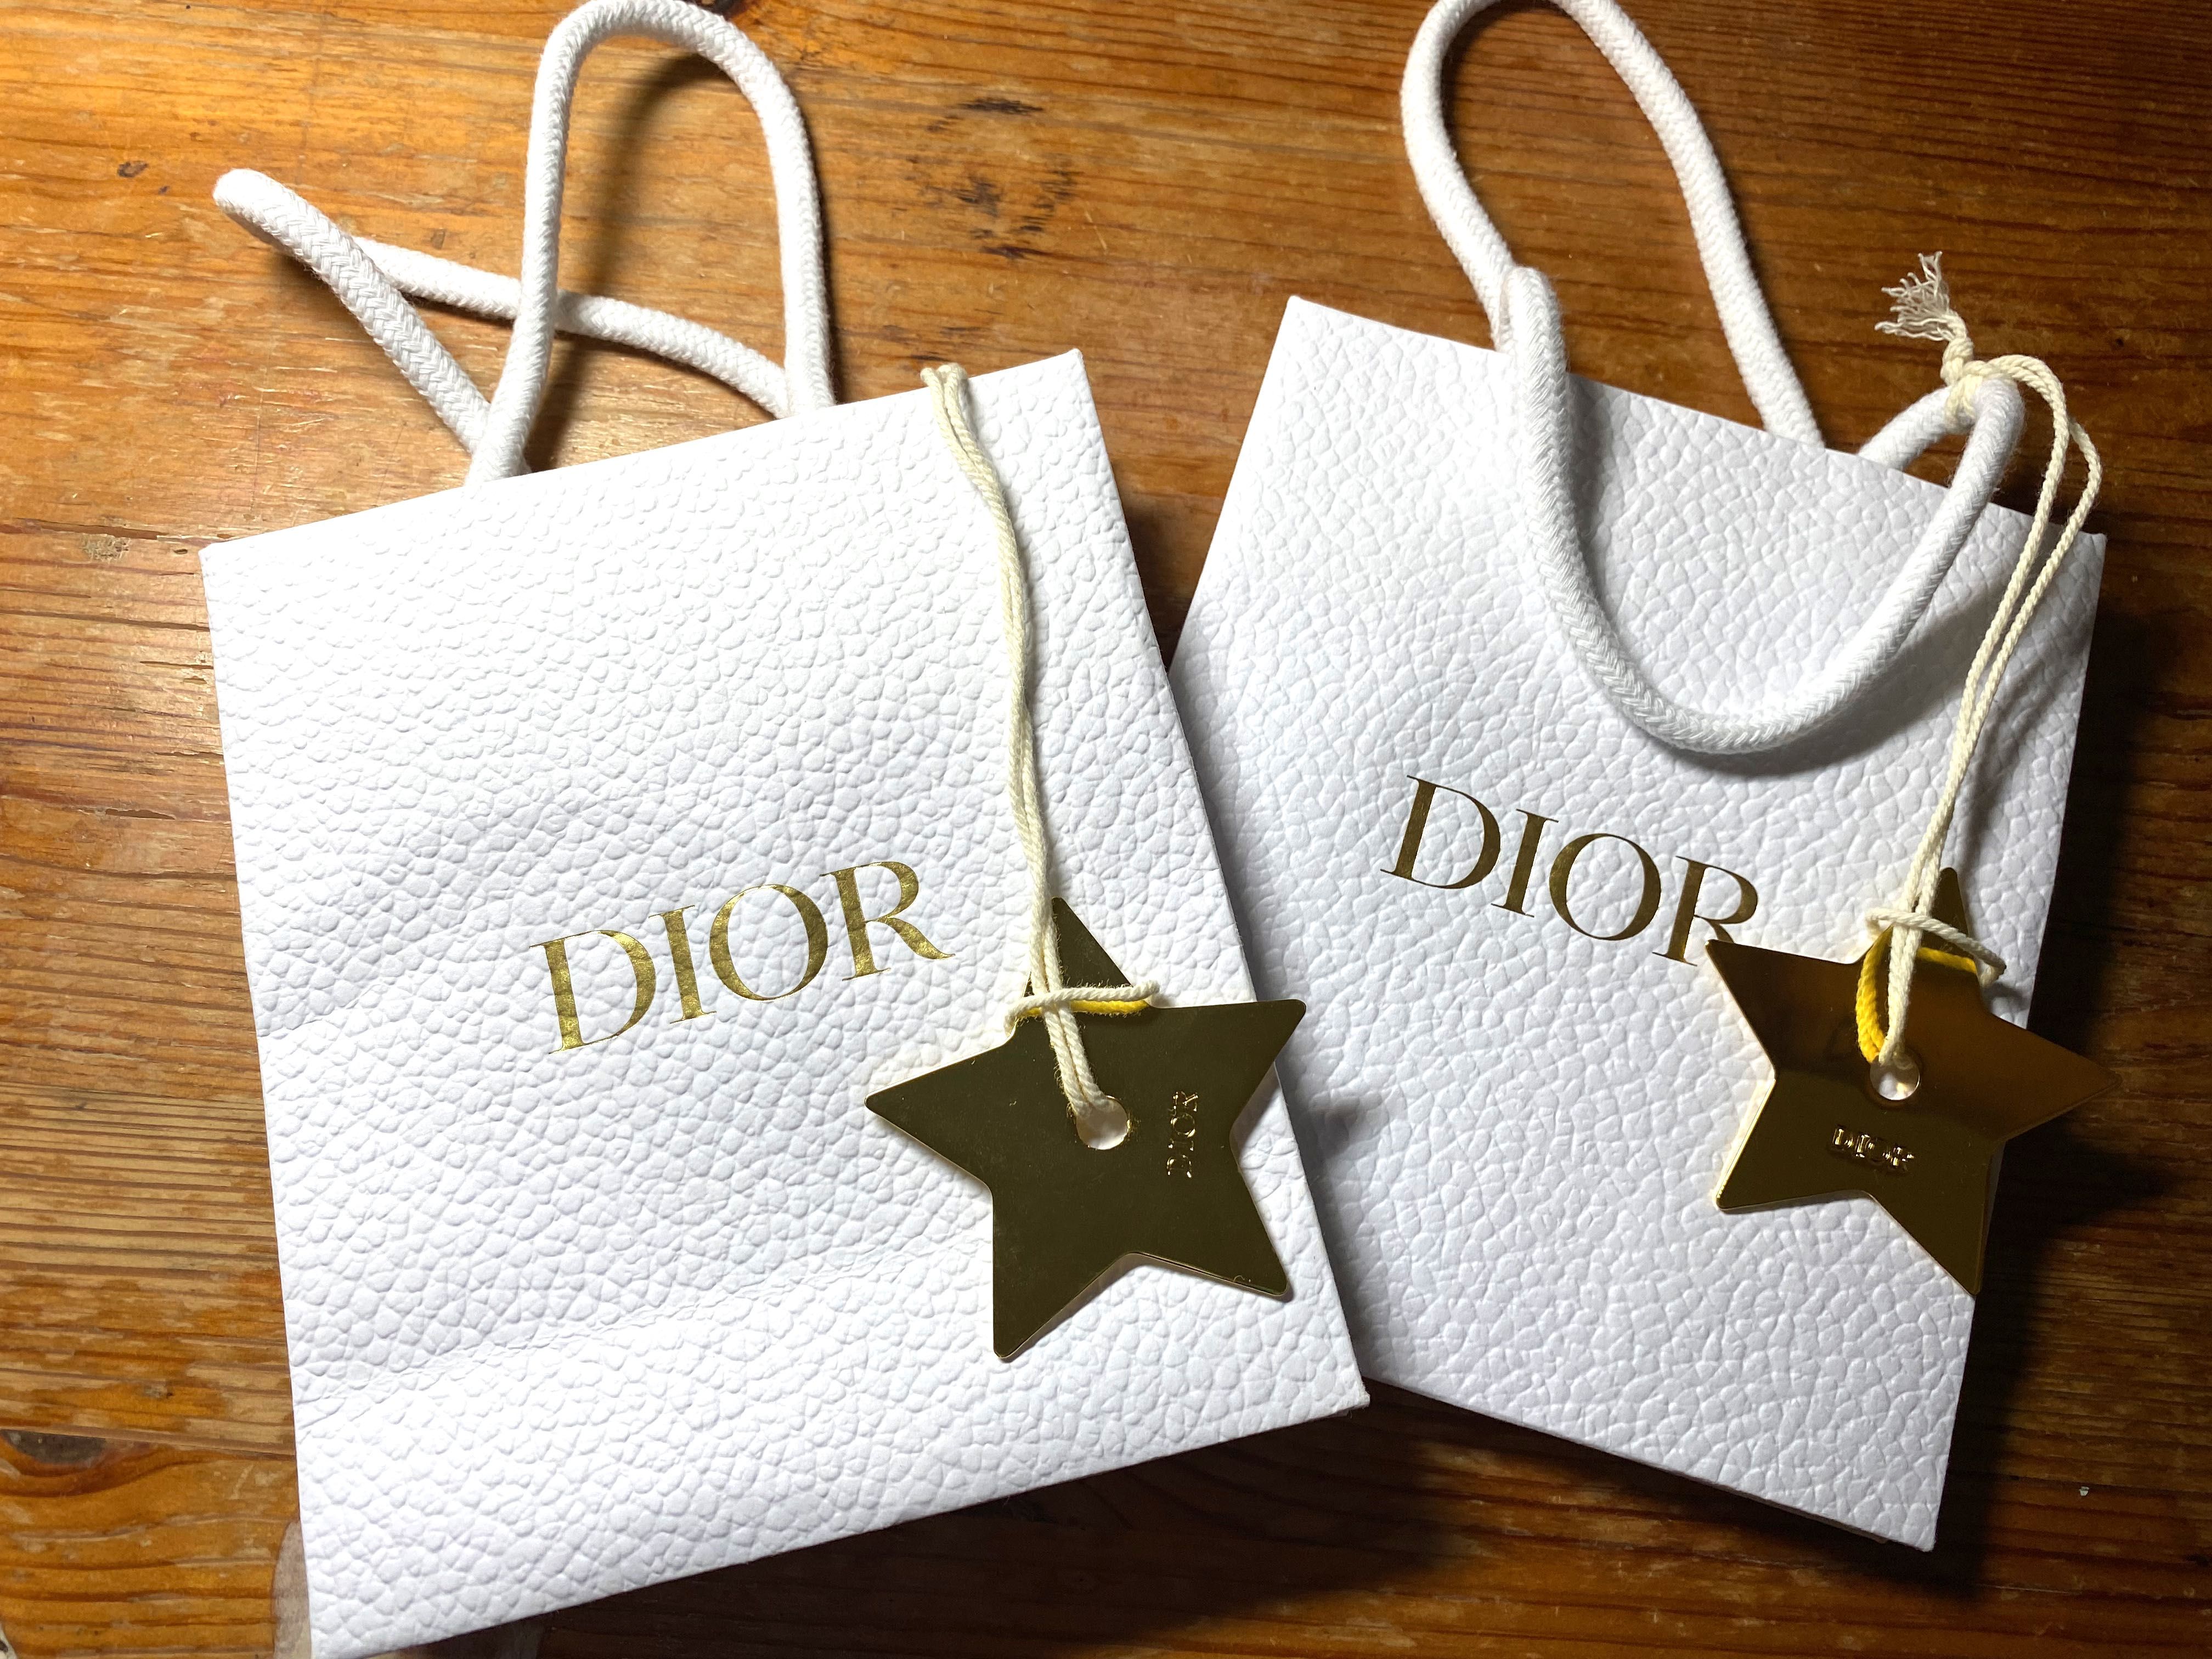 全新》Dior 金屬星星吊飾+品牌小號紙袋, 名牌精品, 精品配件在旋轉拍賣